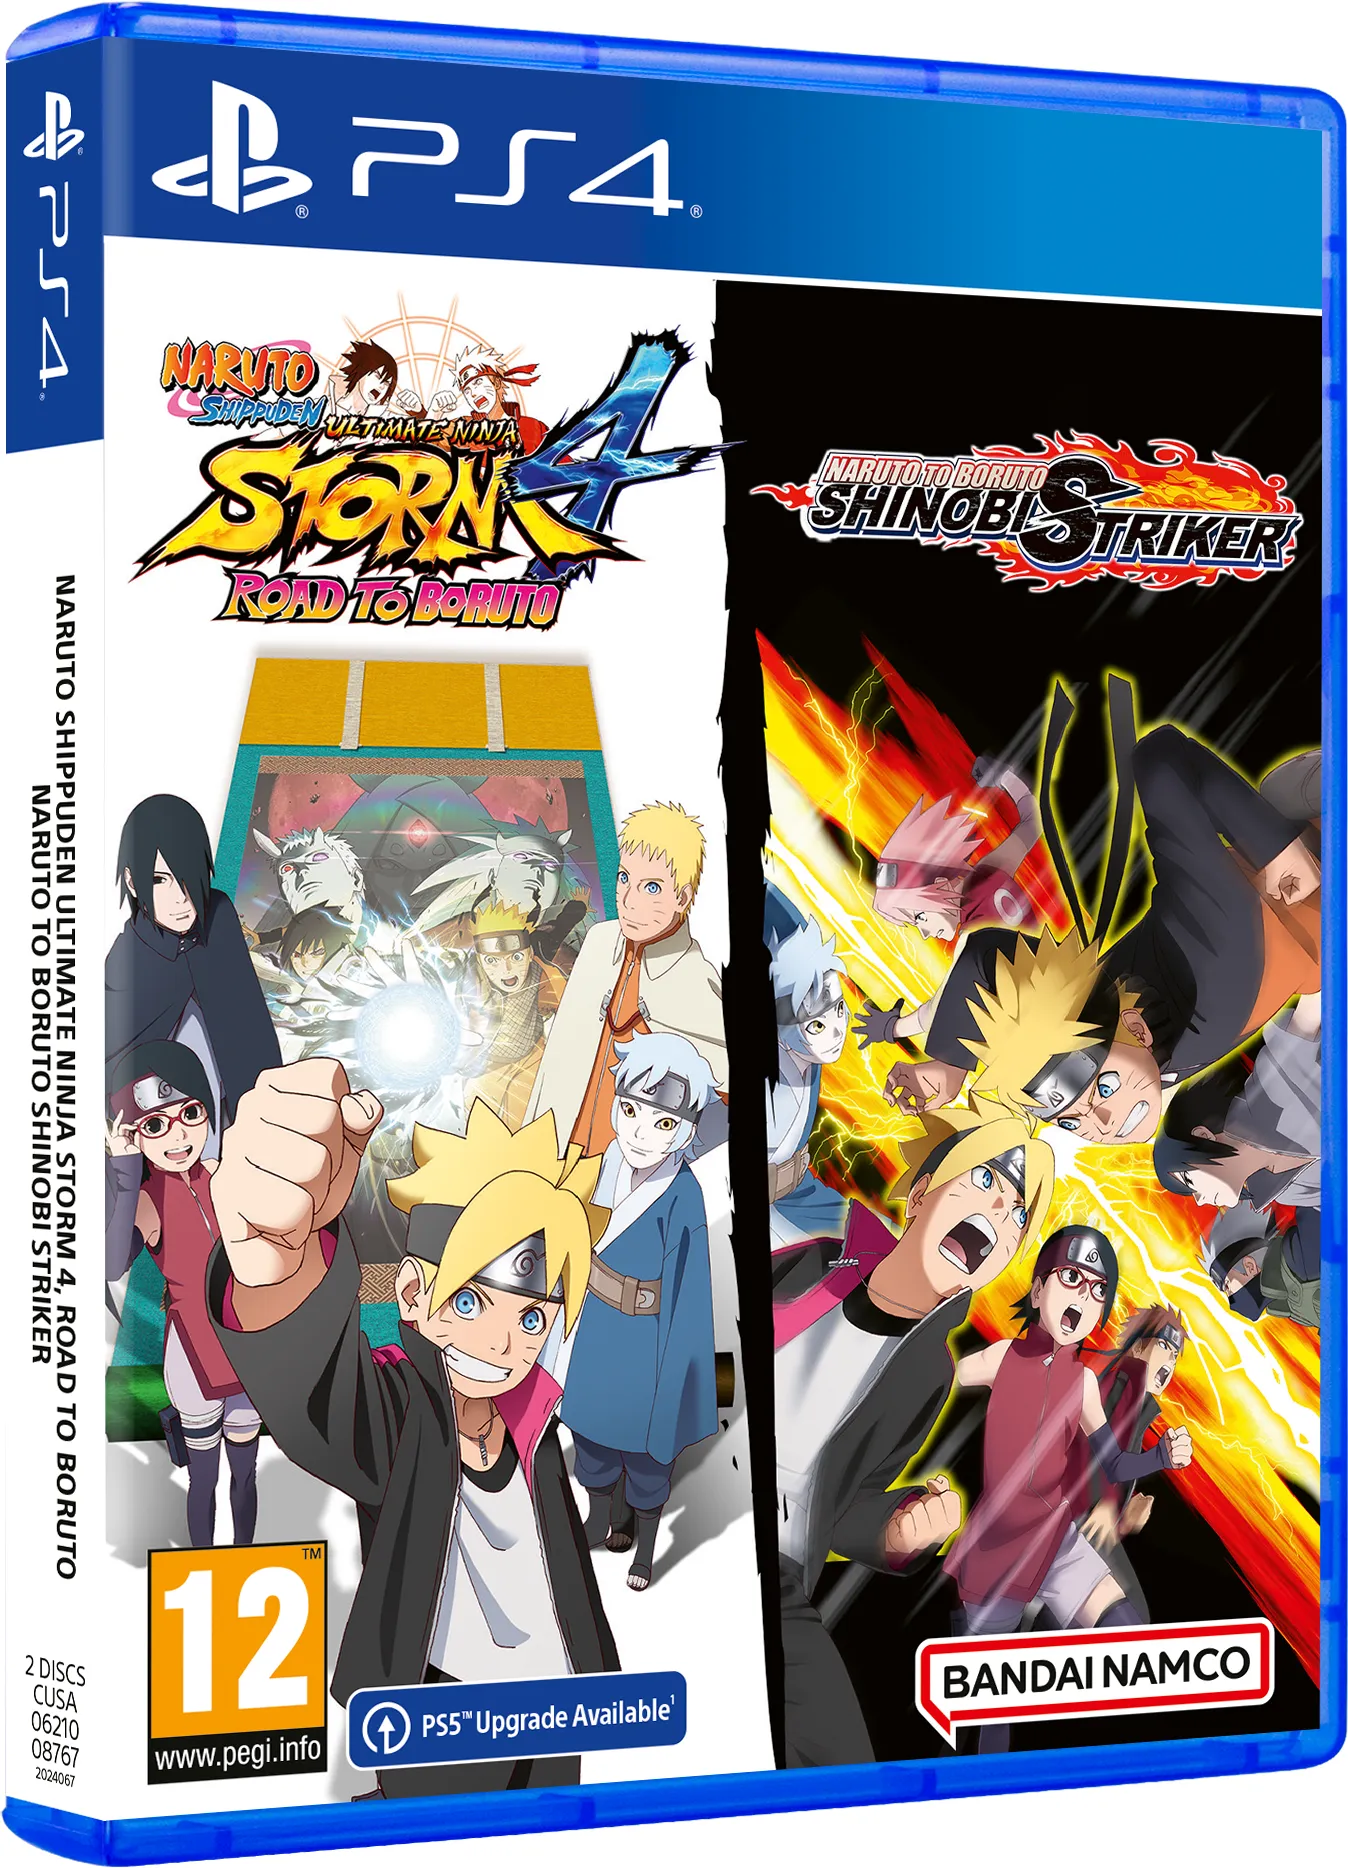 Bandai Namco, Naruto Shippuden Ultimate Ninja Storm 4, Road to Boruto + Naruto to Boruto Shinobi Striker